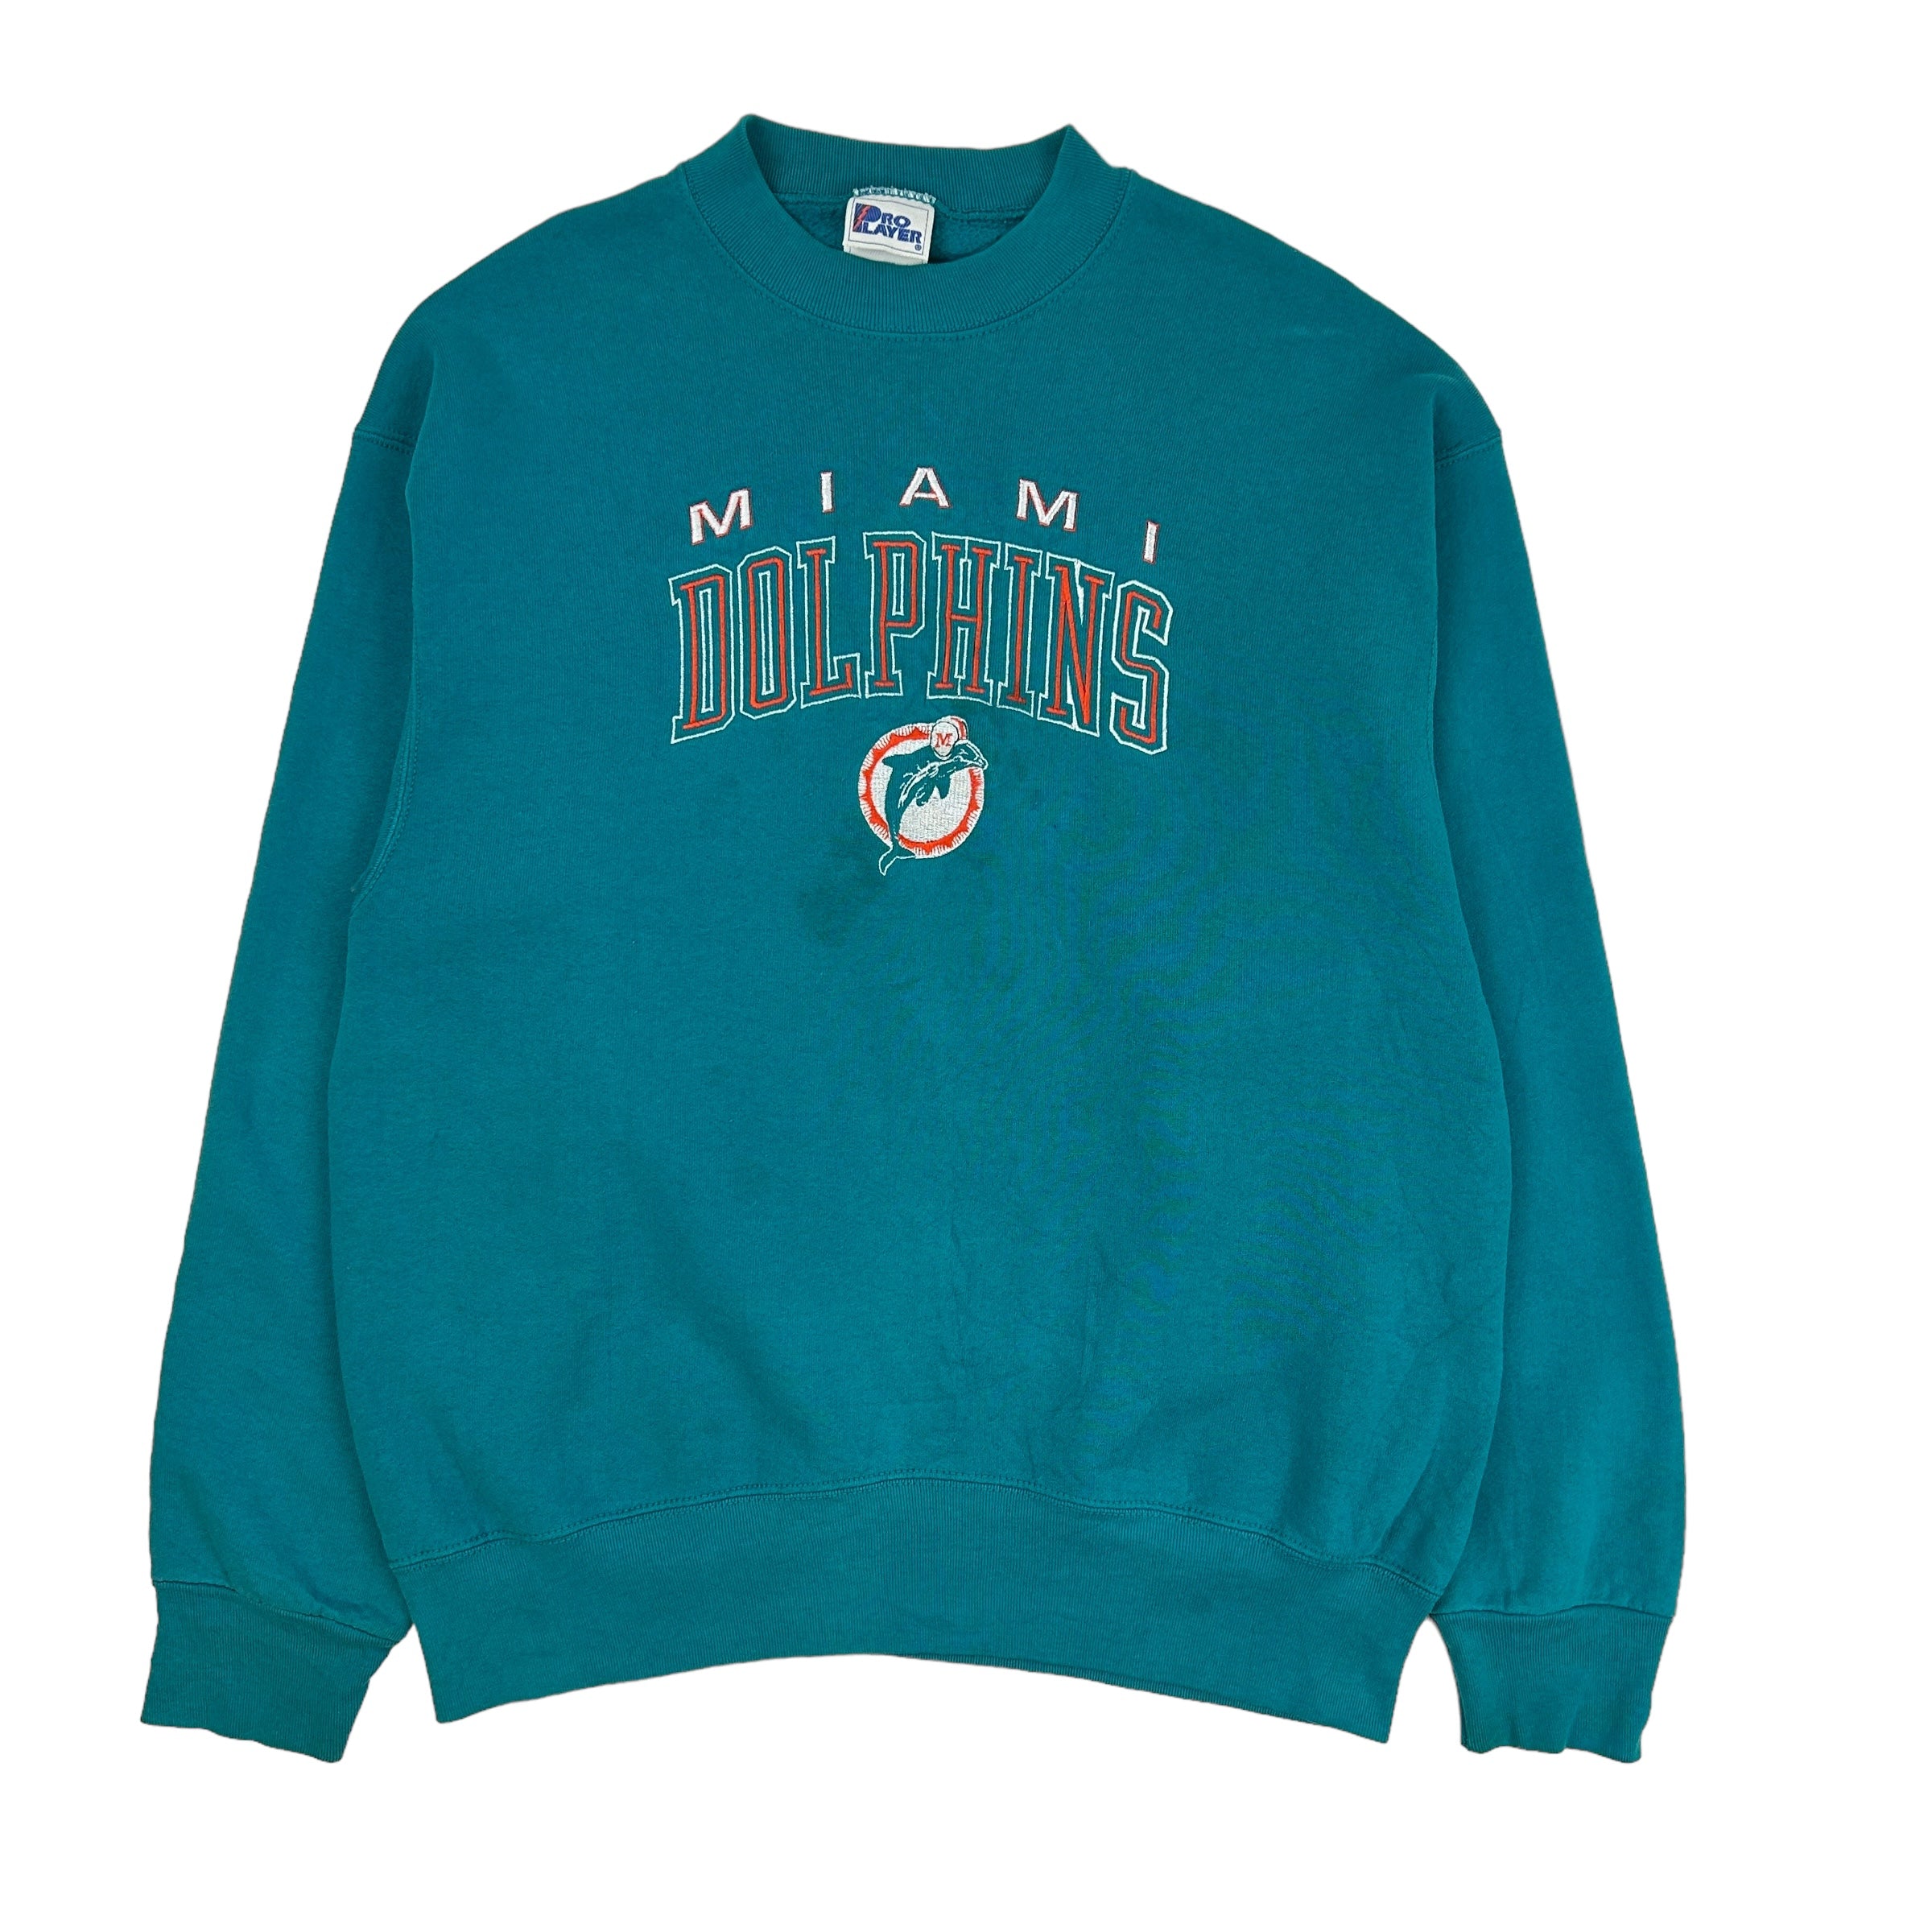 Vintage Miami Dolphins Crewneck Teal